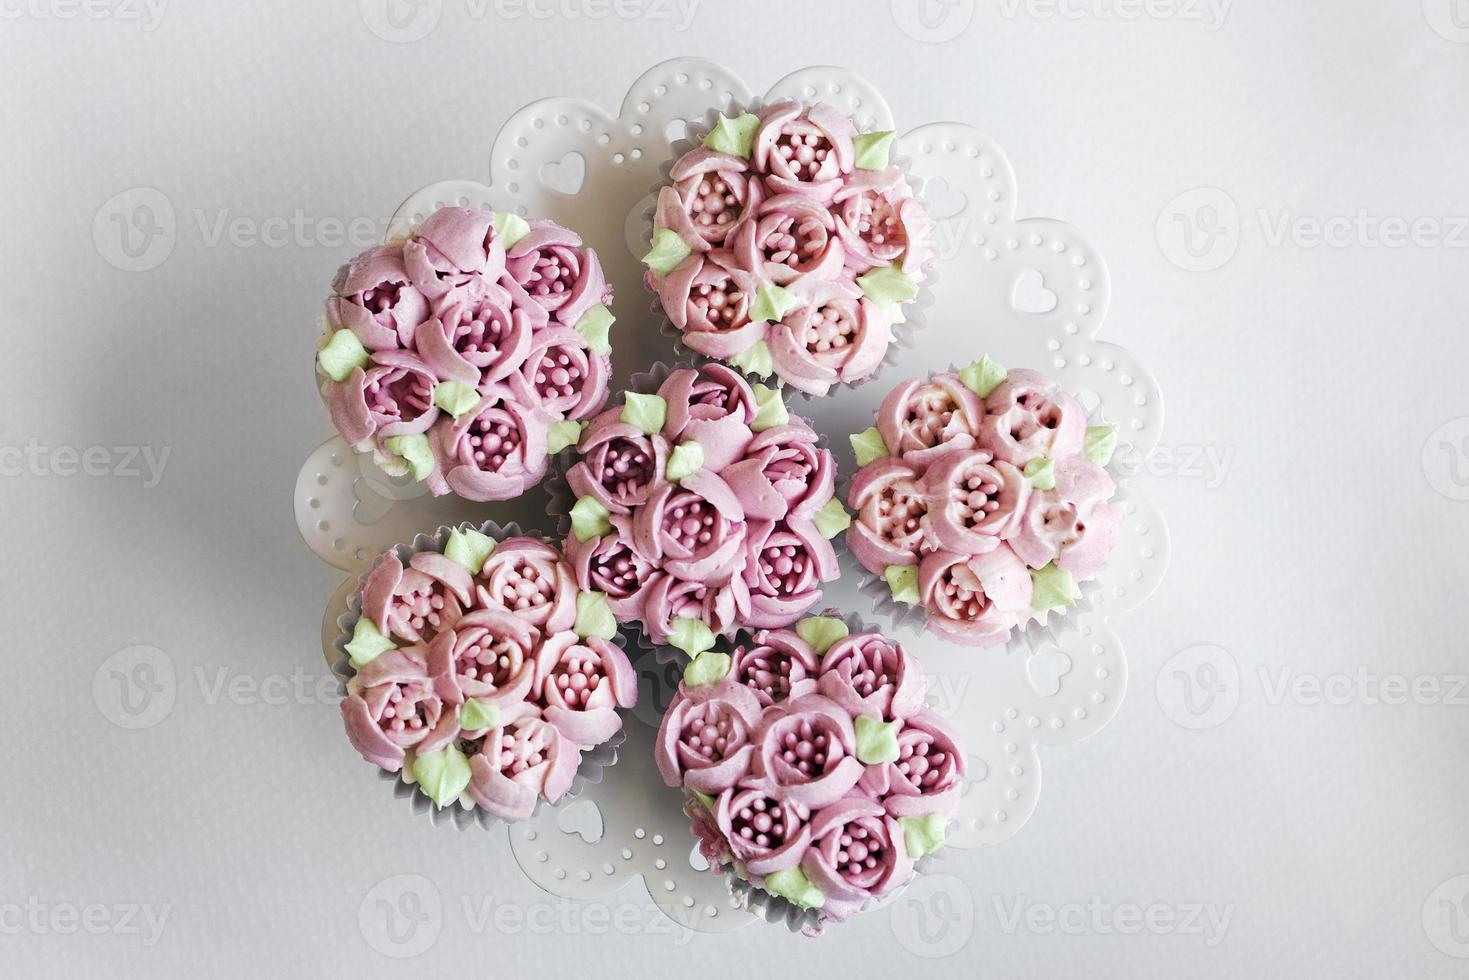 gourmet rosa blomma dekorerade muffins på bordet foto